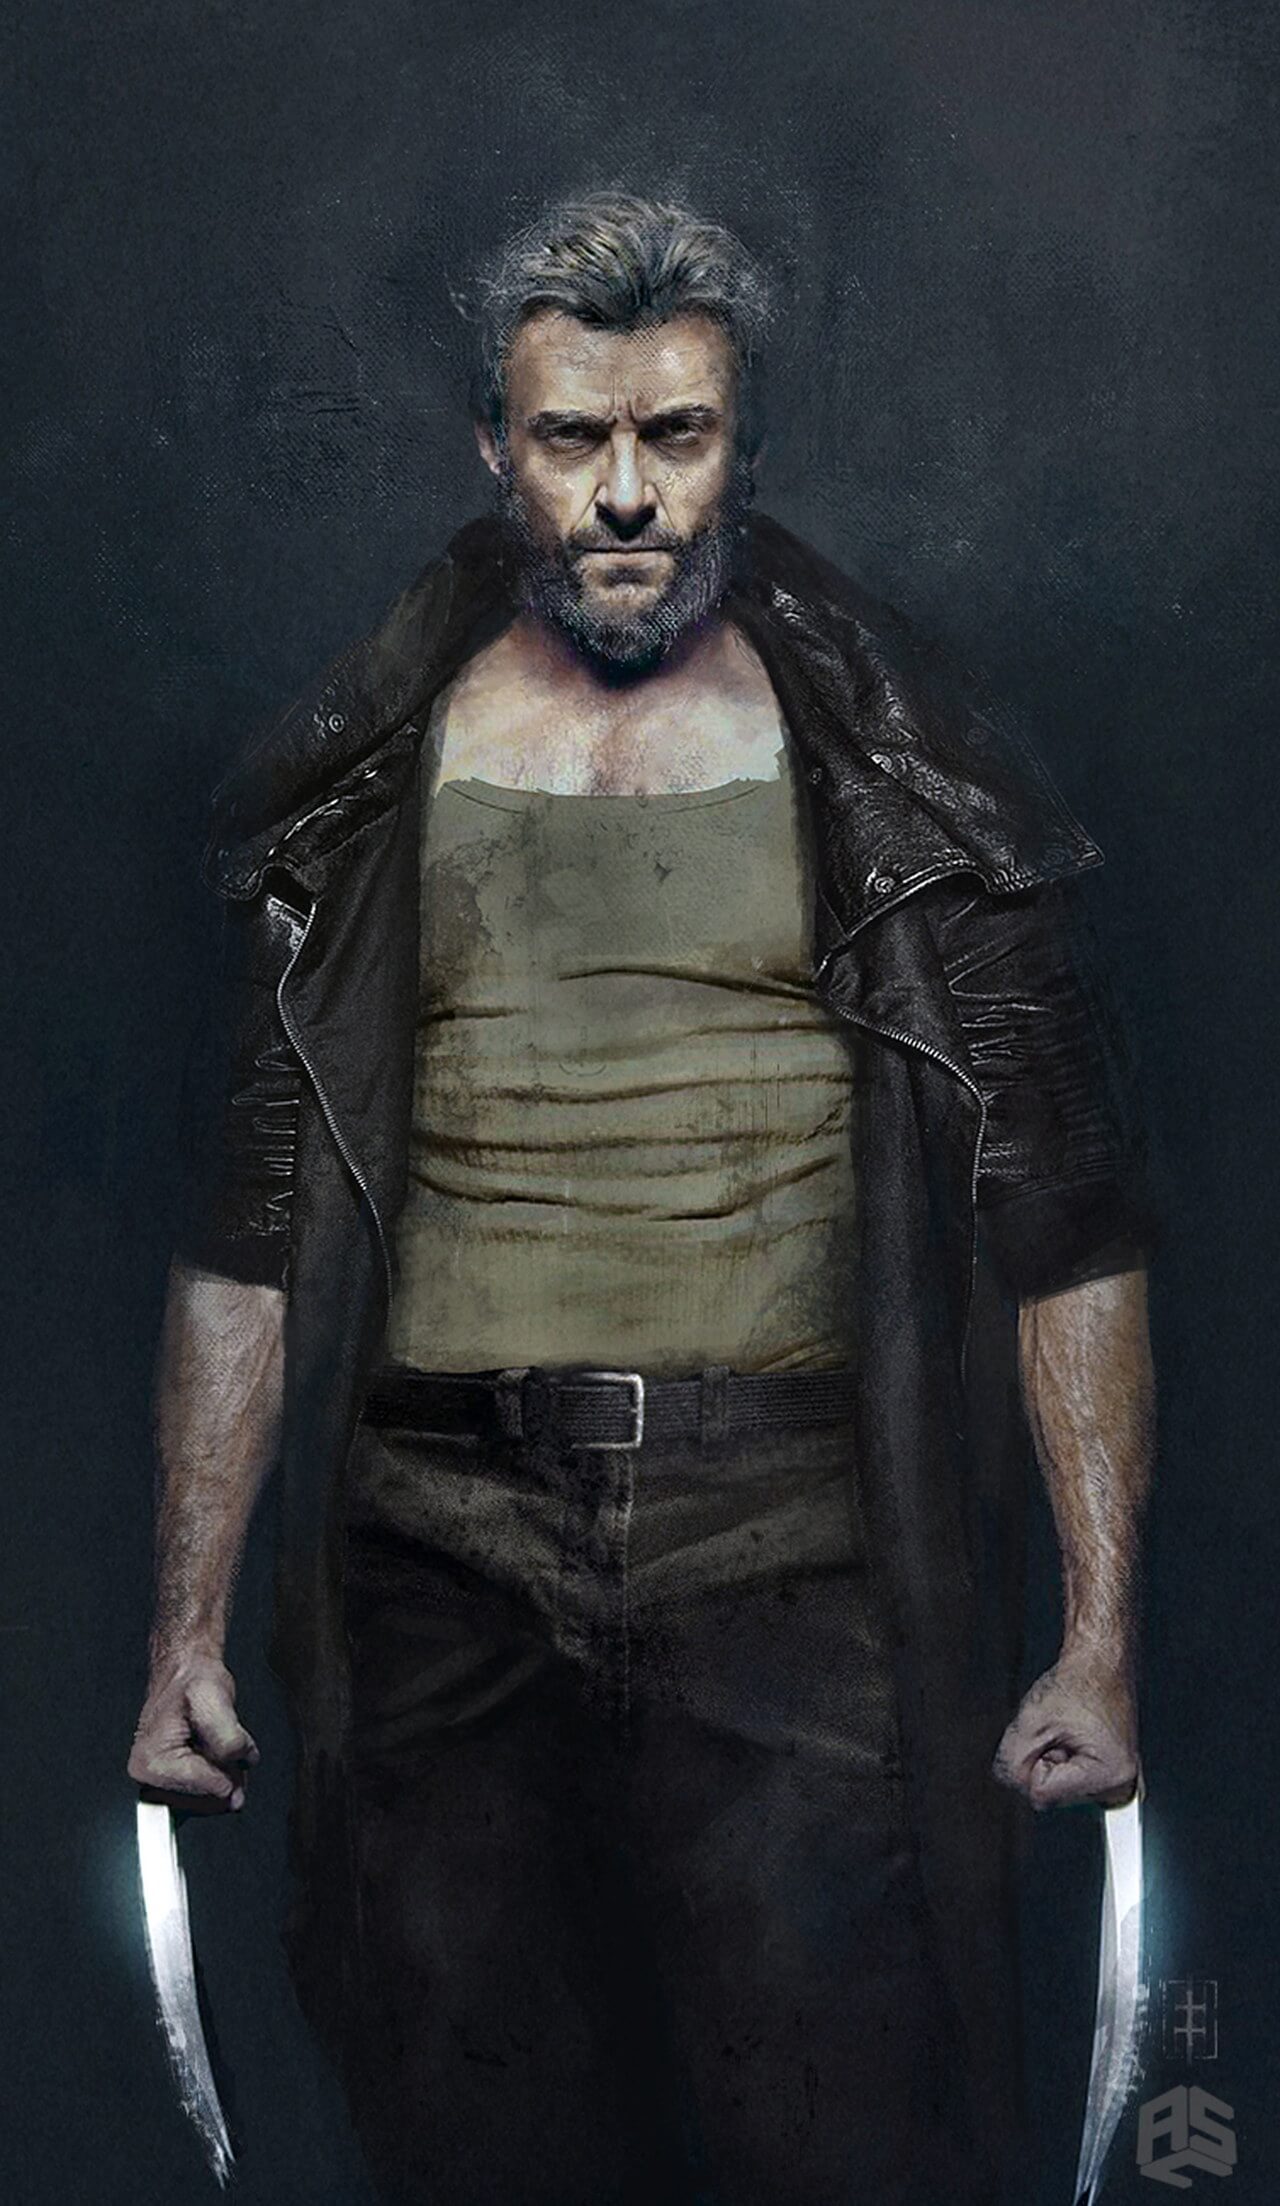 Logan - The Wolverine: nuovettagli e nuovi concept art su X-23 e Professor X